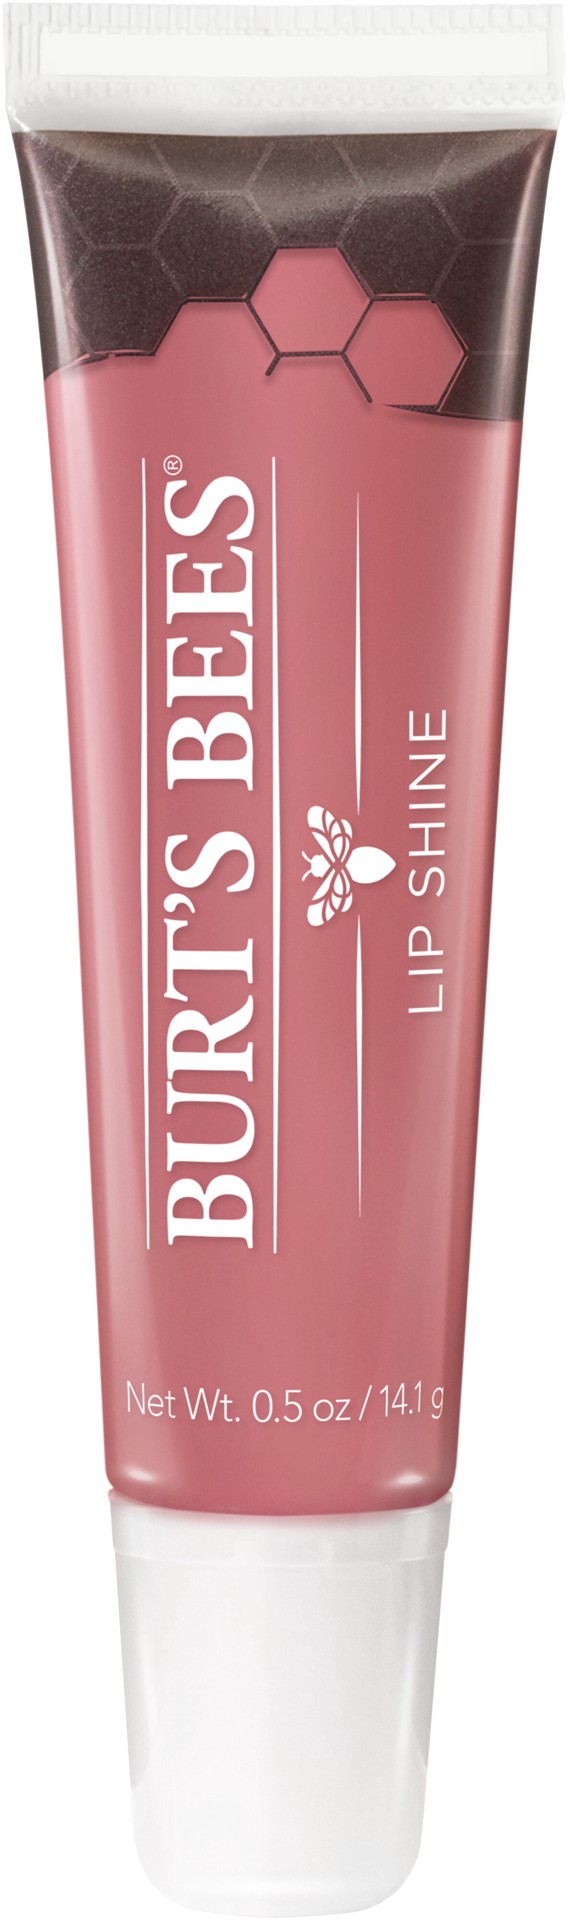 slide 1 of 22, Burt's Bees Blush 020 Lip Shine 0.5 oz, 0.5 oz